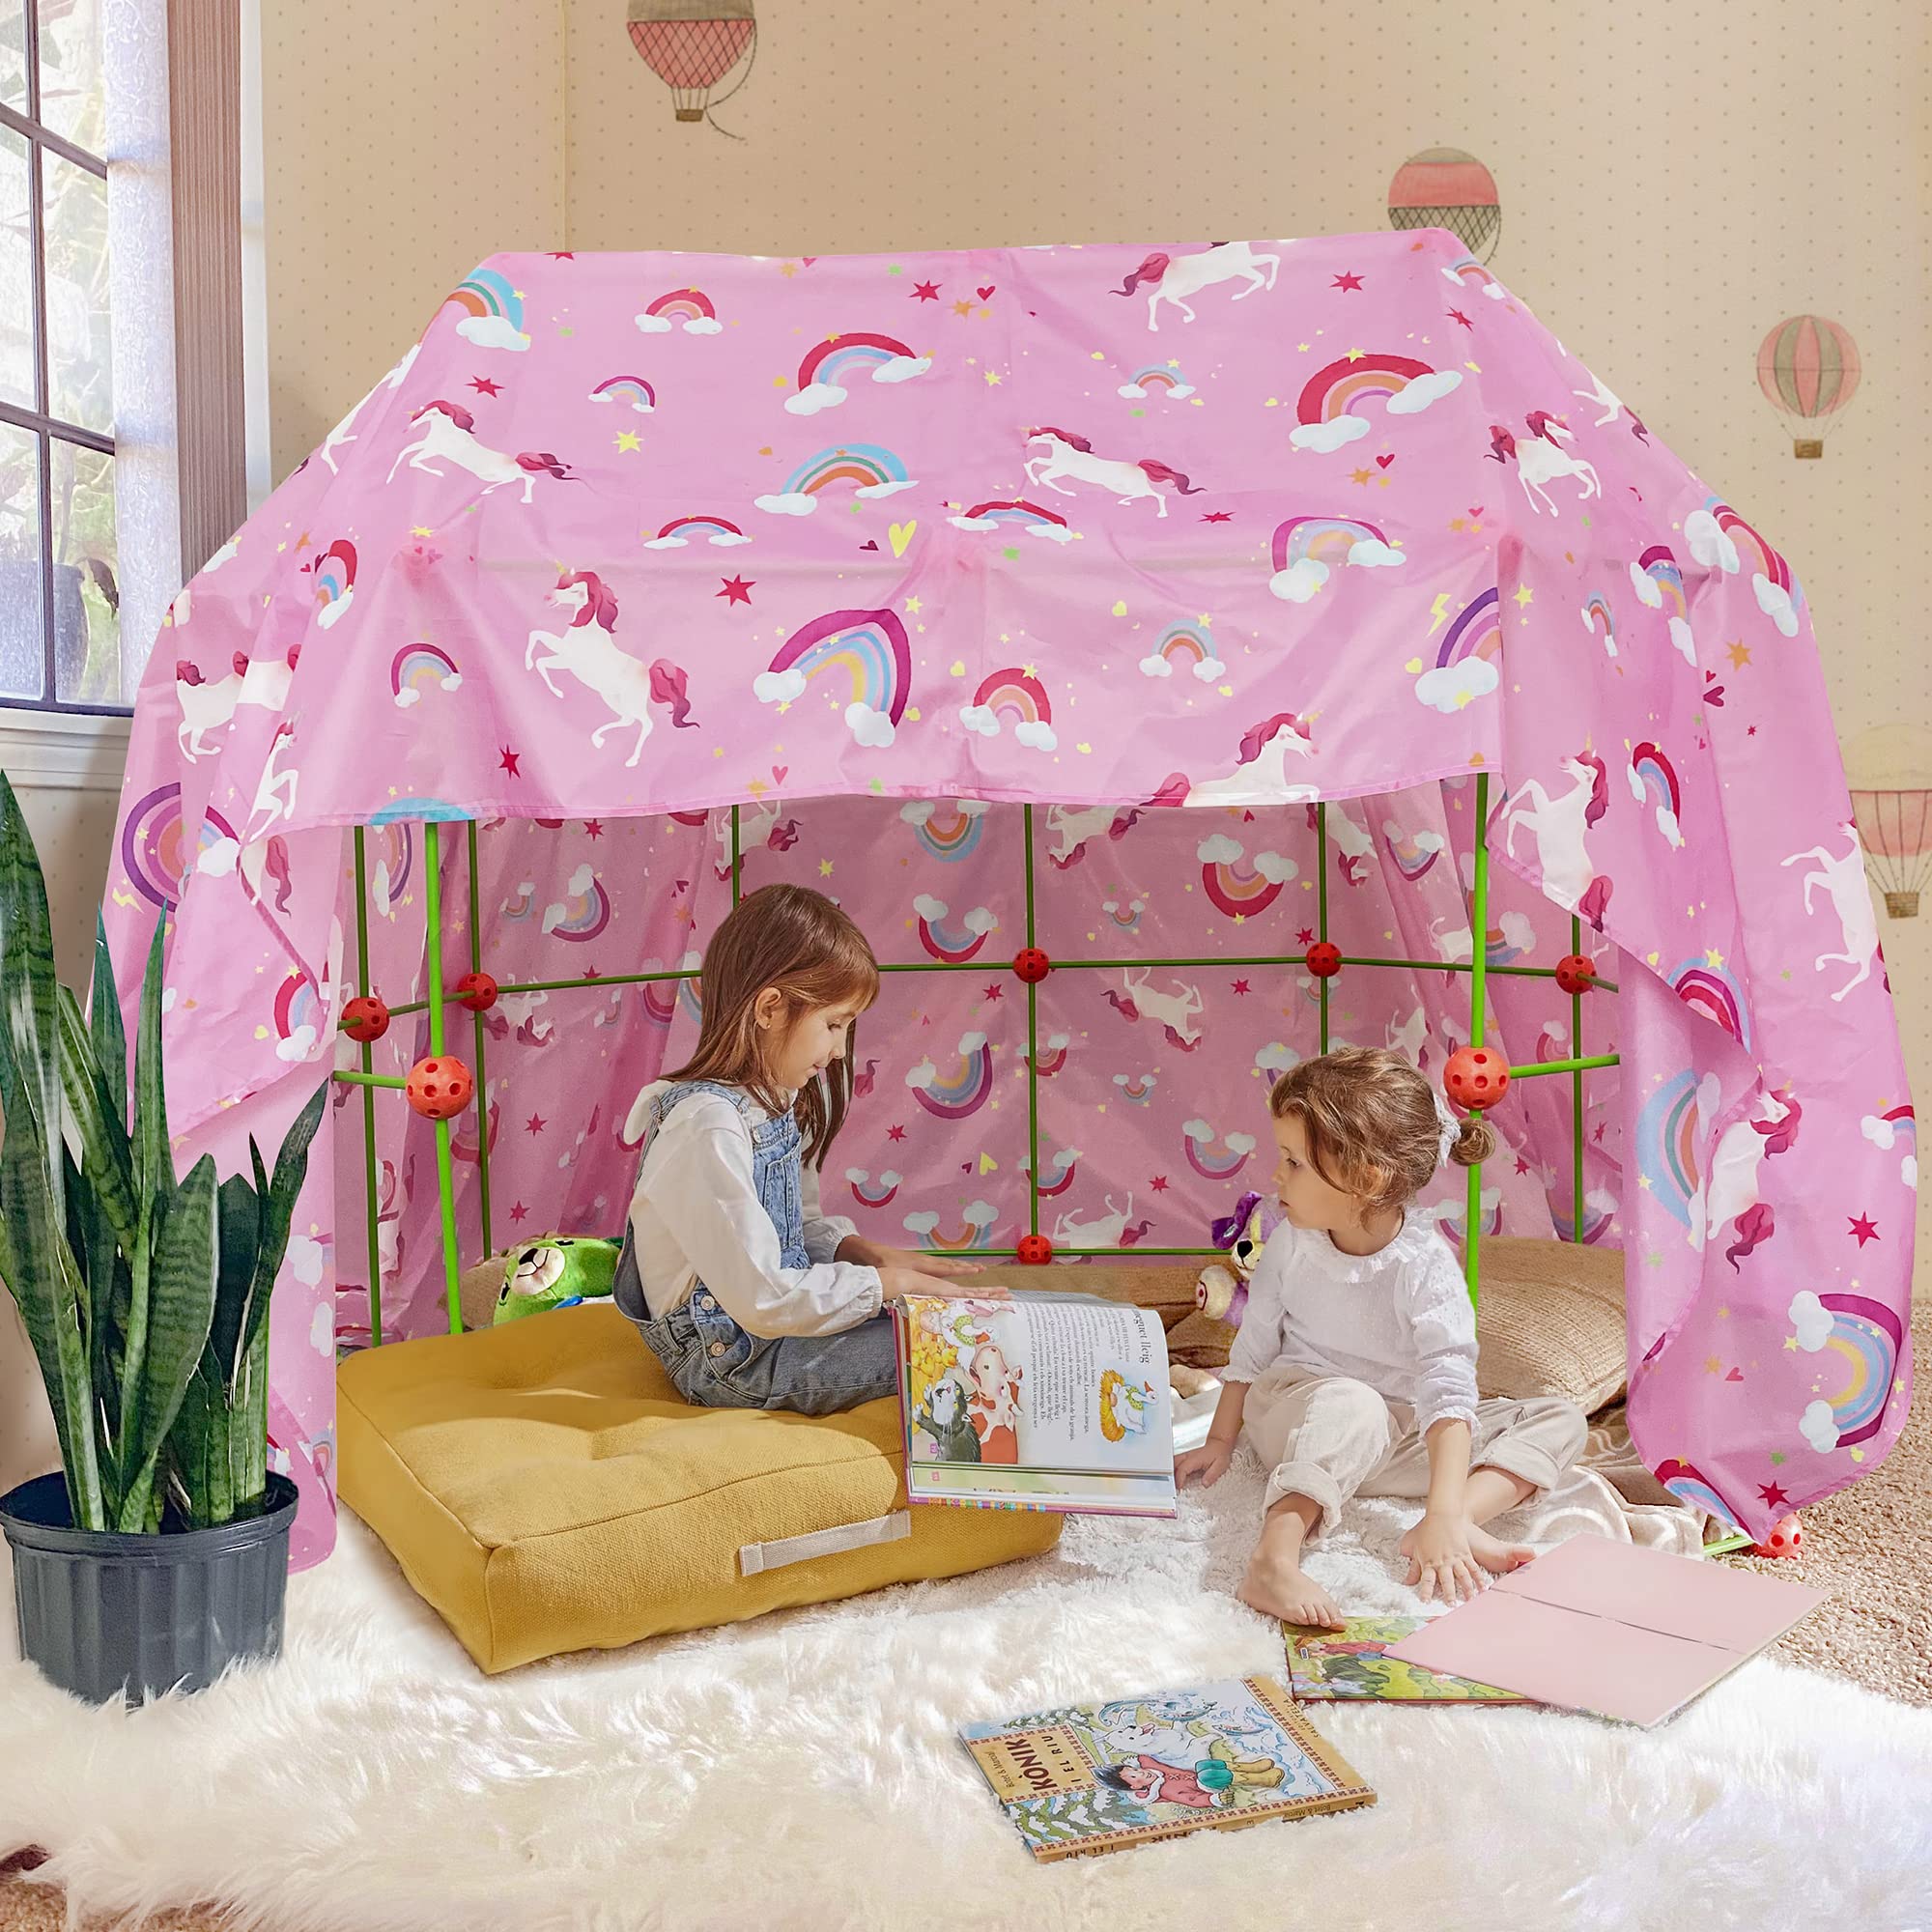 Blanket Fort for Kids, Fits Fort Building Kit, Kids Fort, Pink